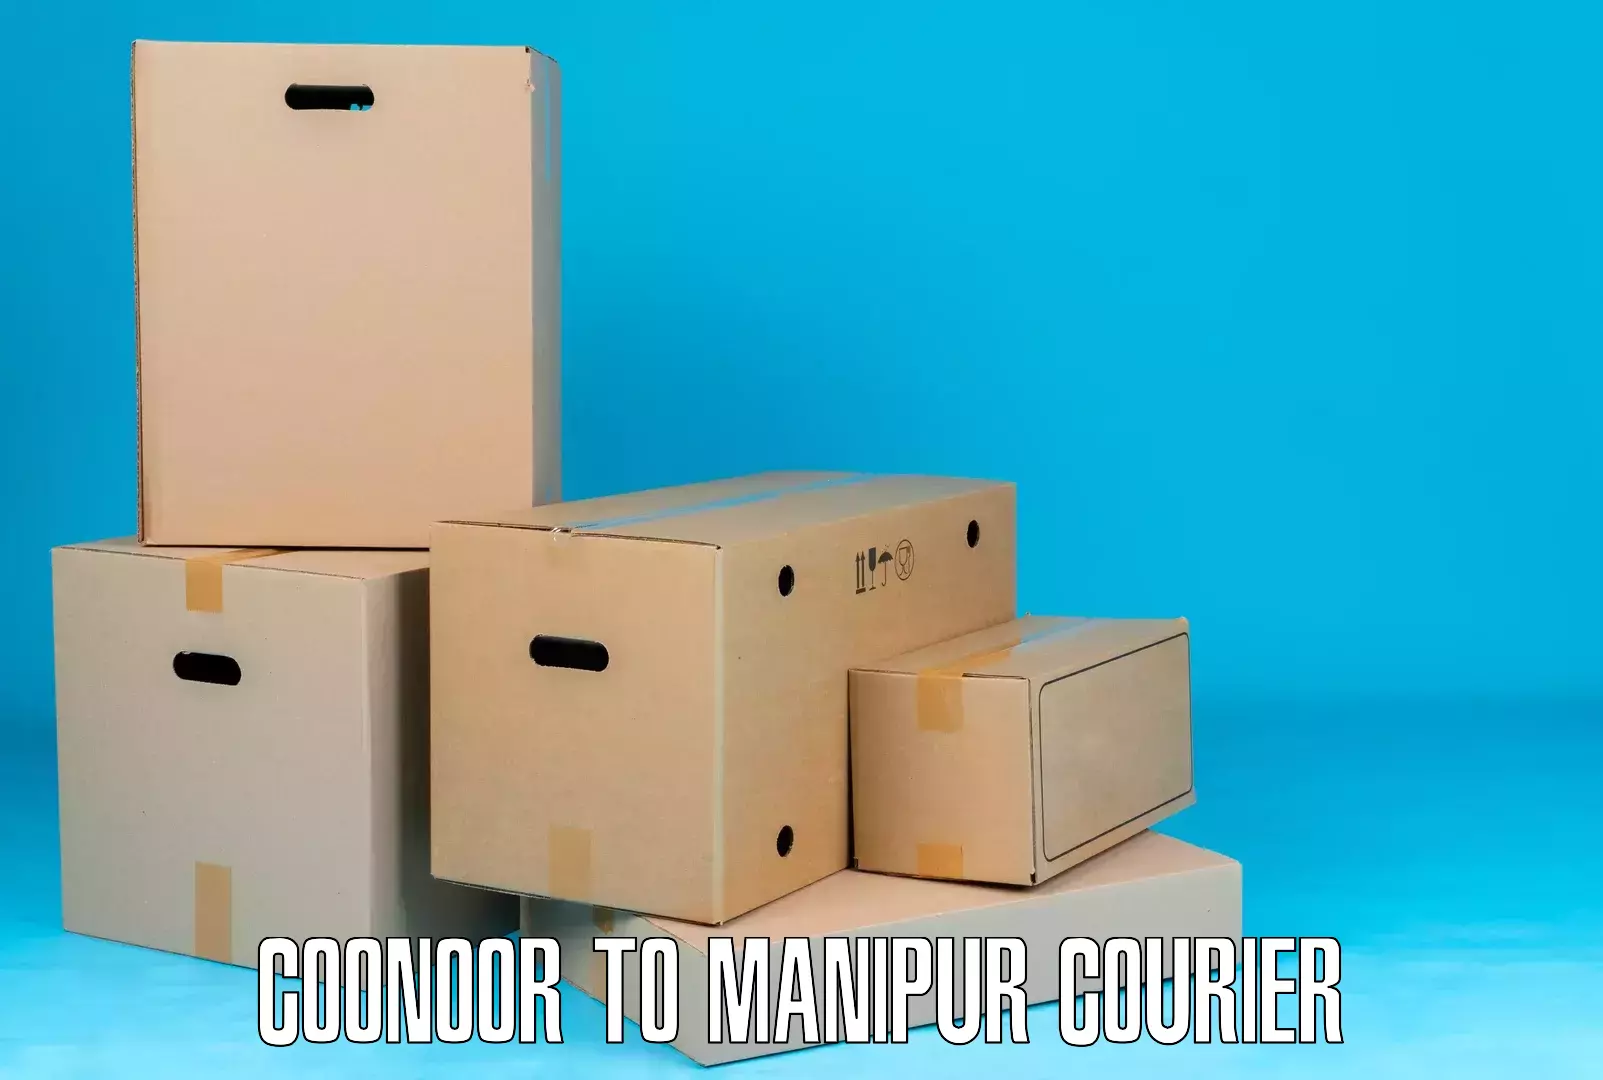 International parcel service Coonoor to Chandel